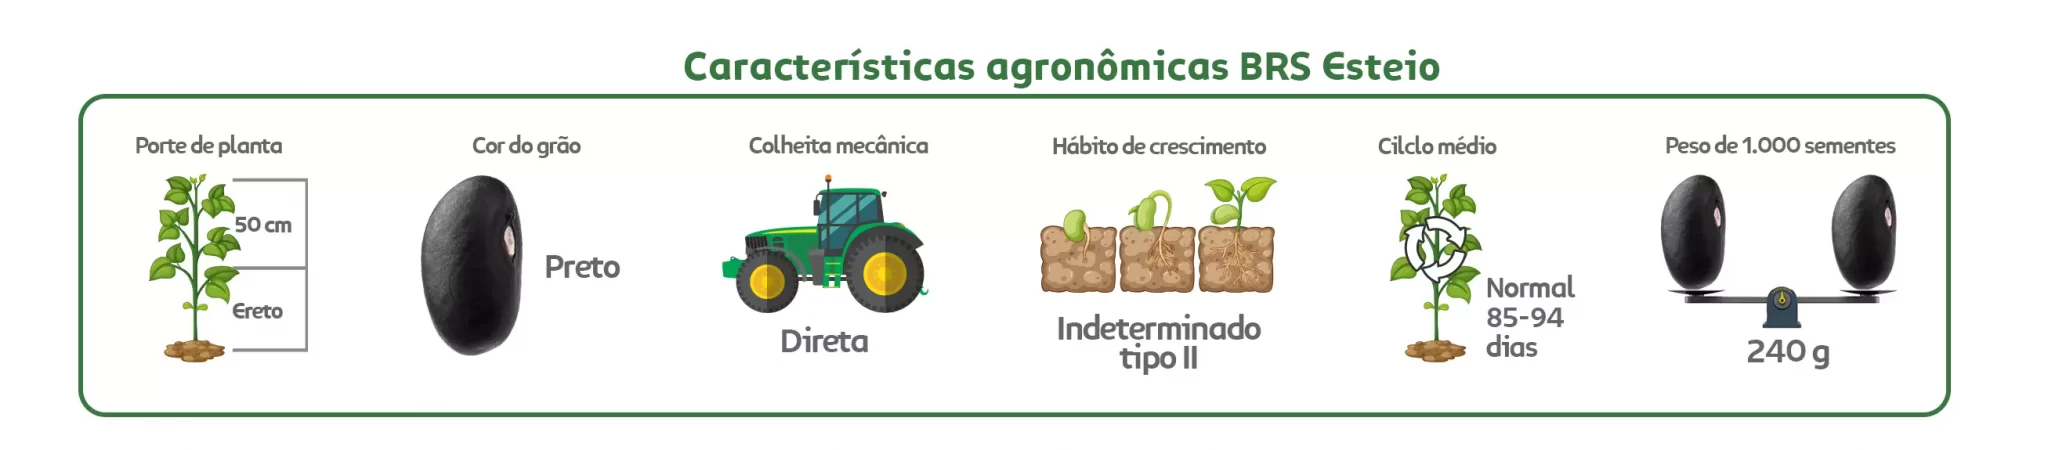 Características agronômicas Feijão Preto BRS Esteio